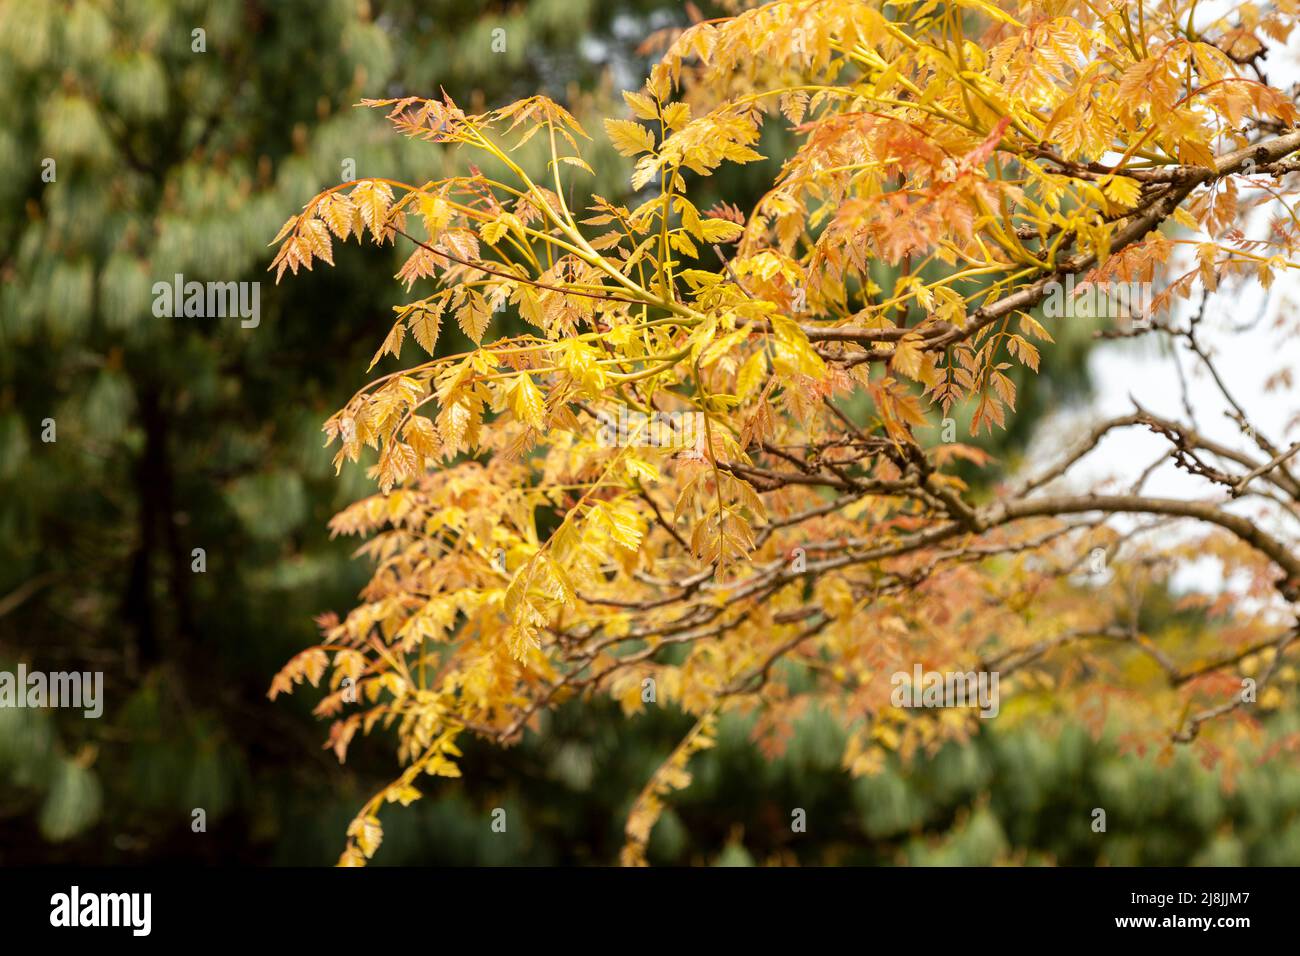 koelreuteria paniculata tree in Edinburgh botanic gardens Stock Photo